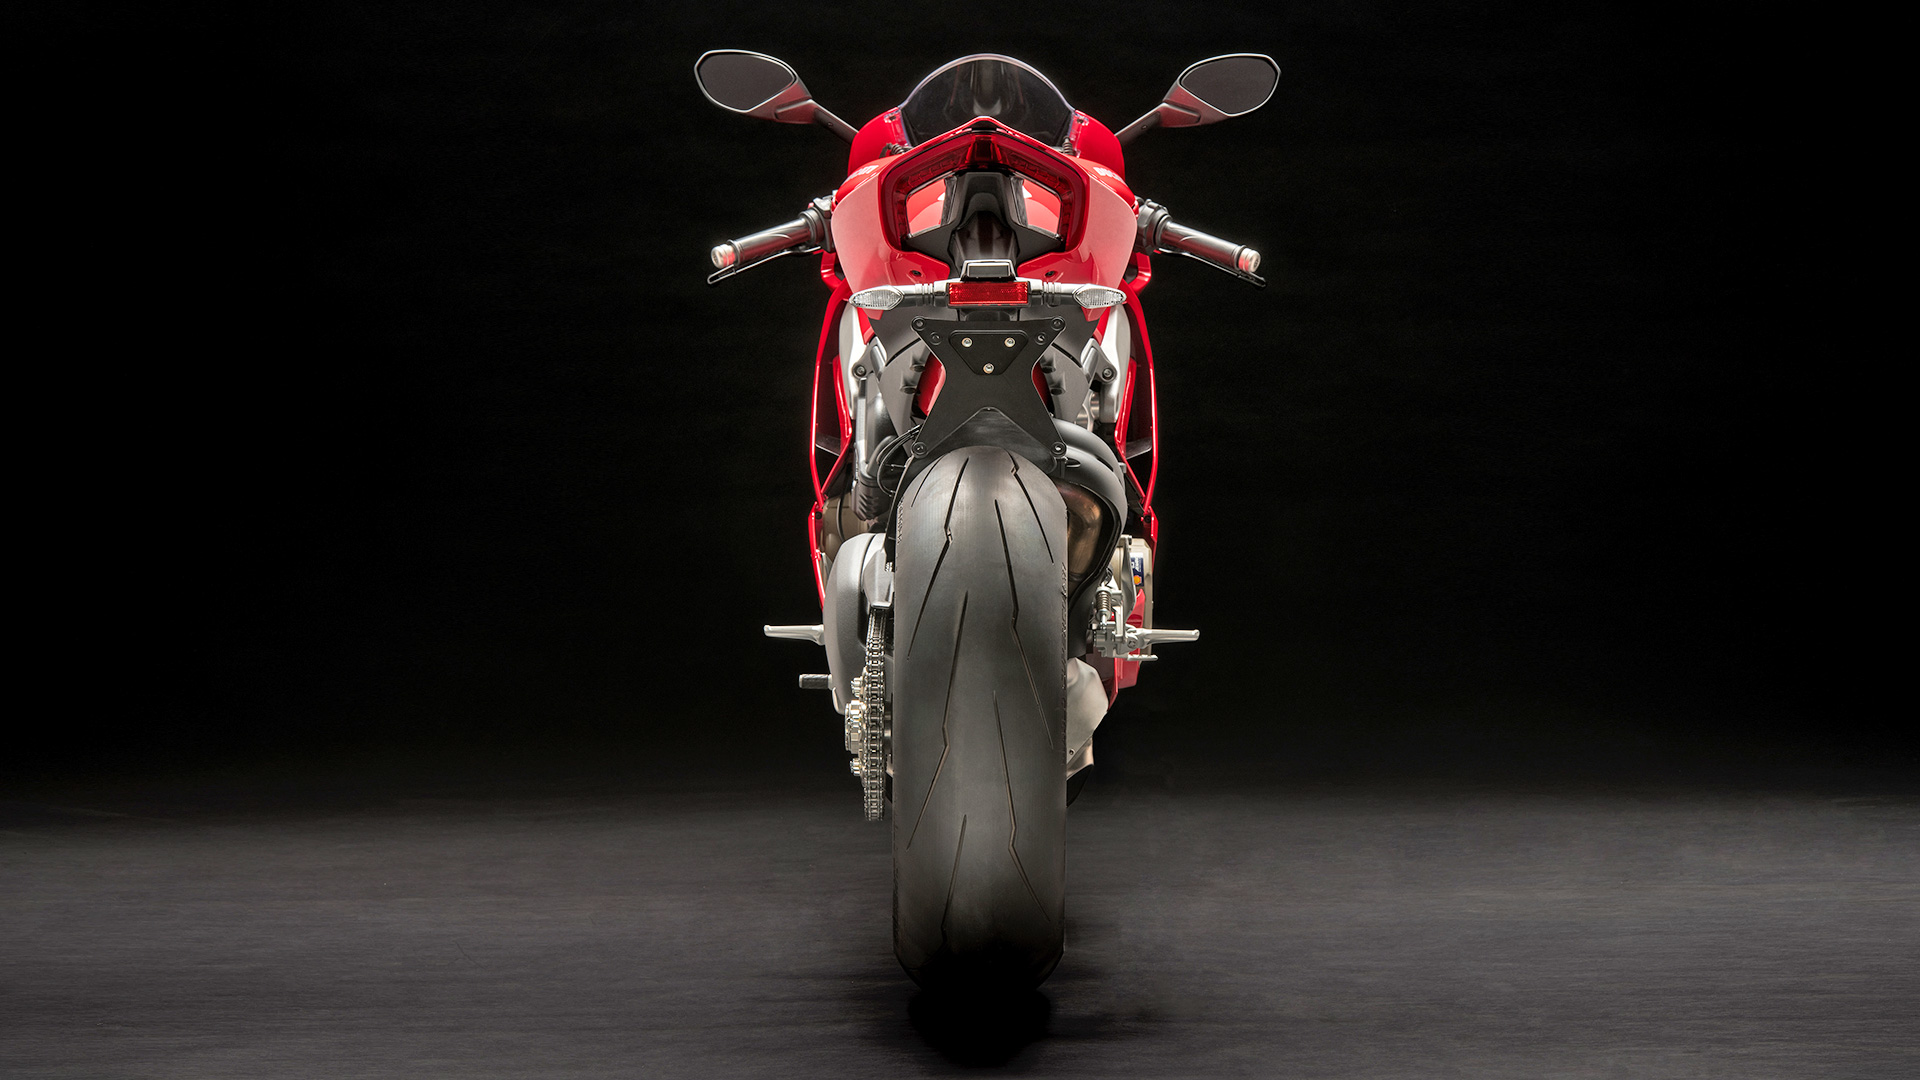 Ducati Panigale 2018 V4 S